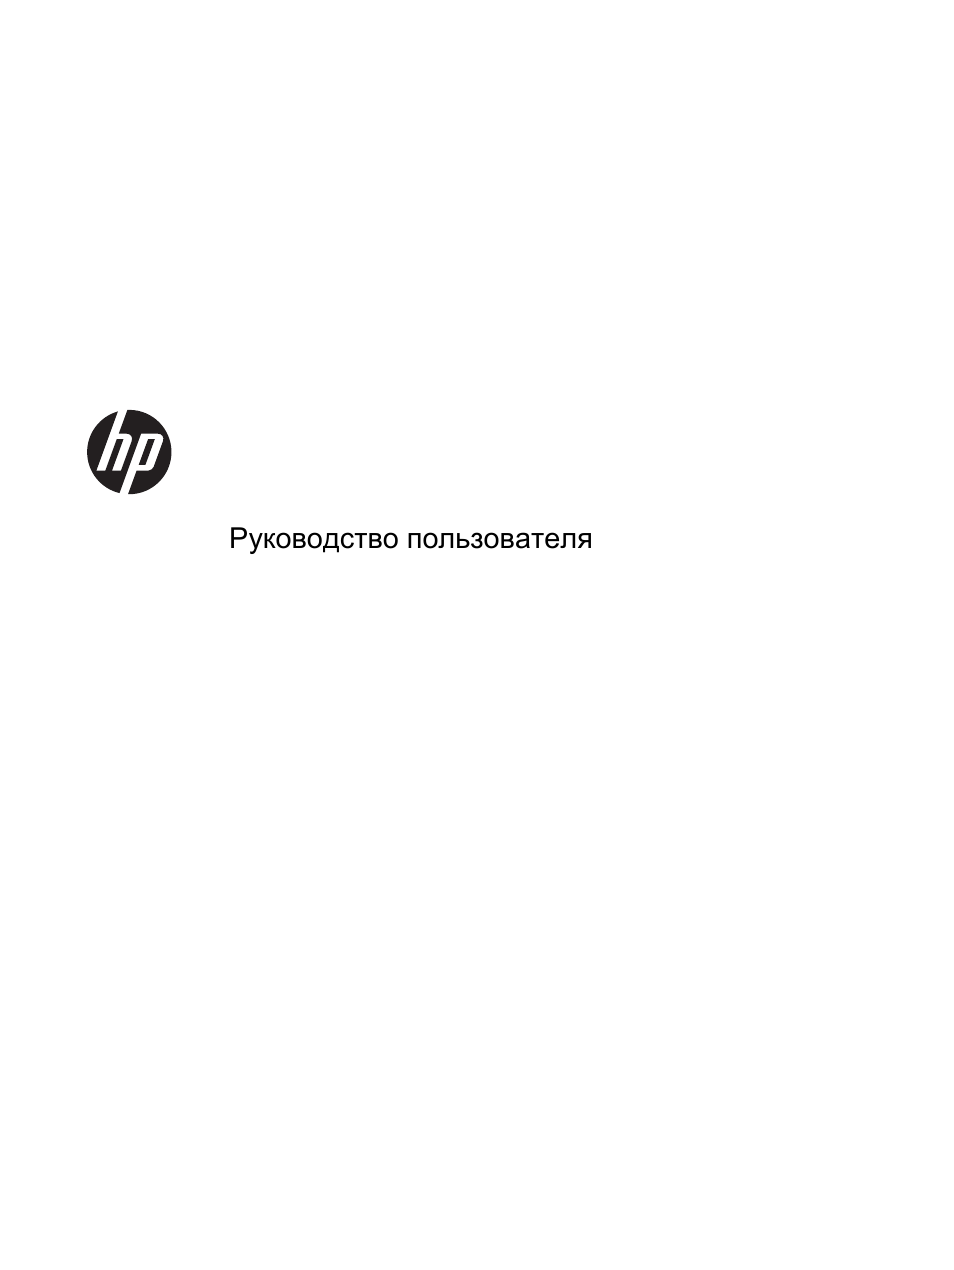 Инструкция по эксплуатации HP Мобильная рабочая станция HP ZBook 14 | 120 страниц